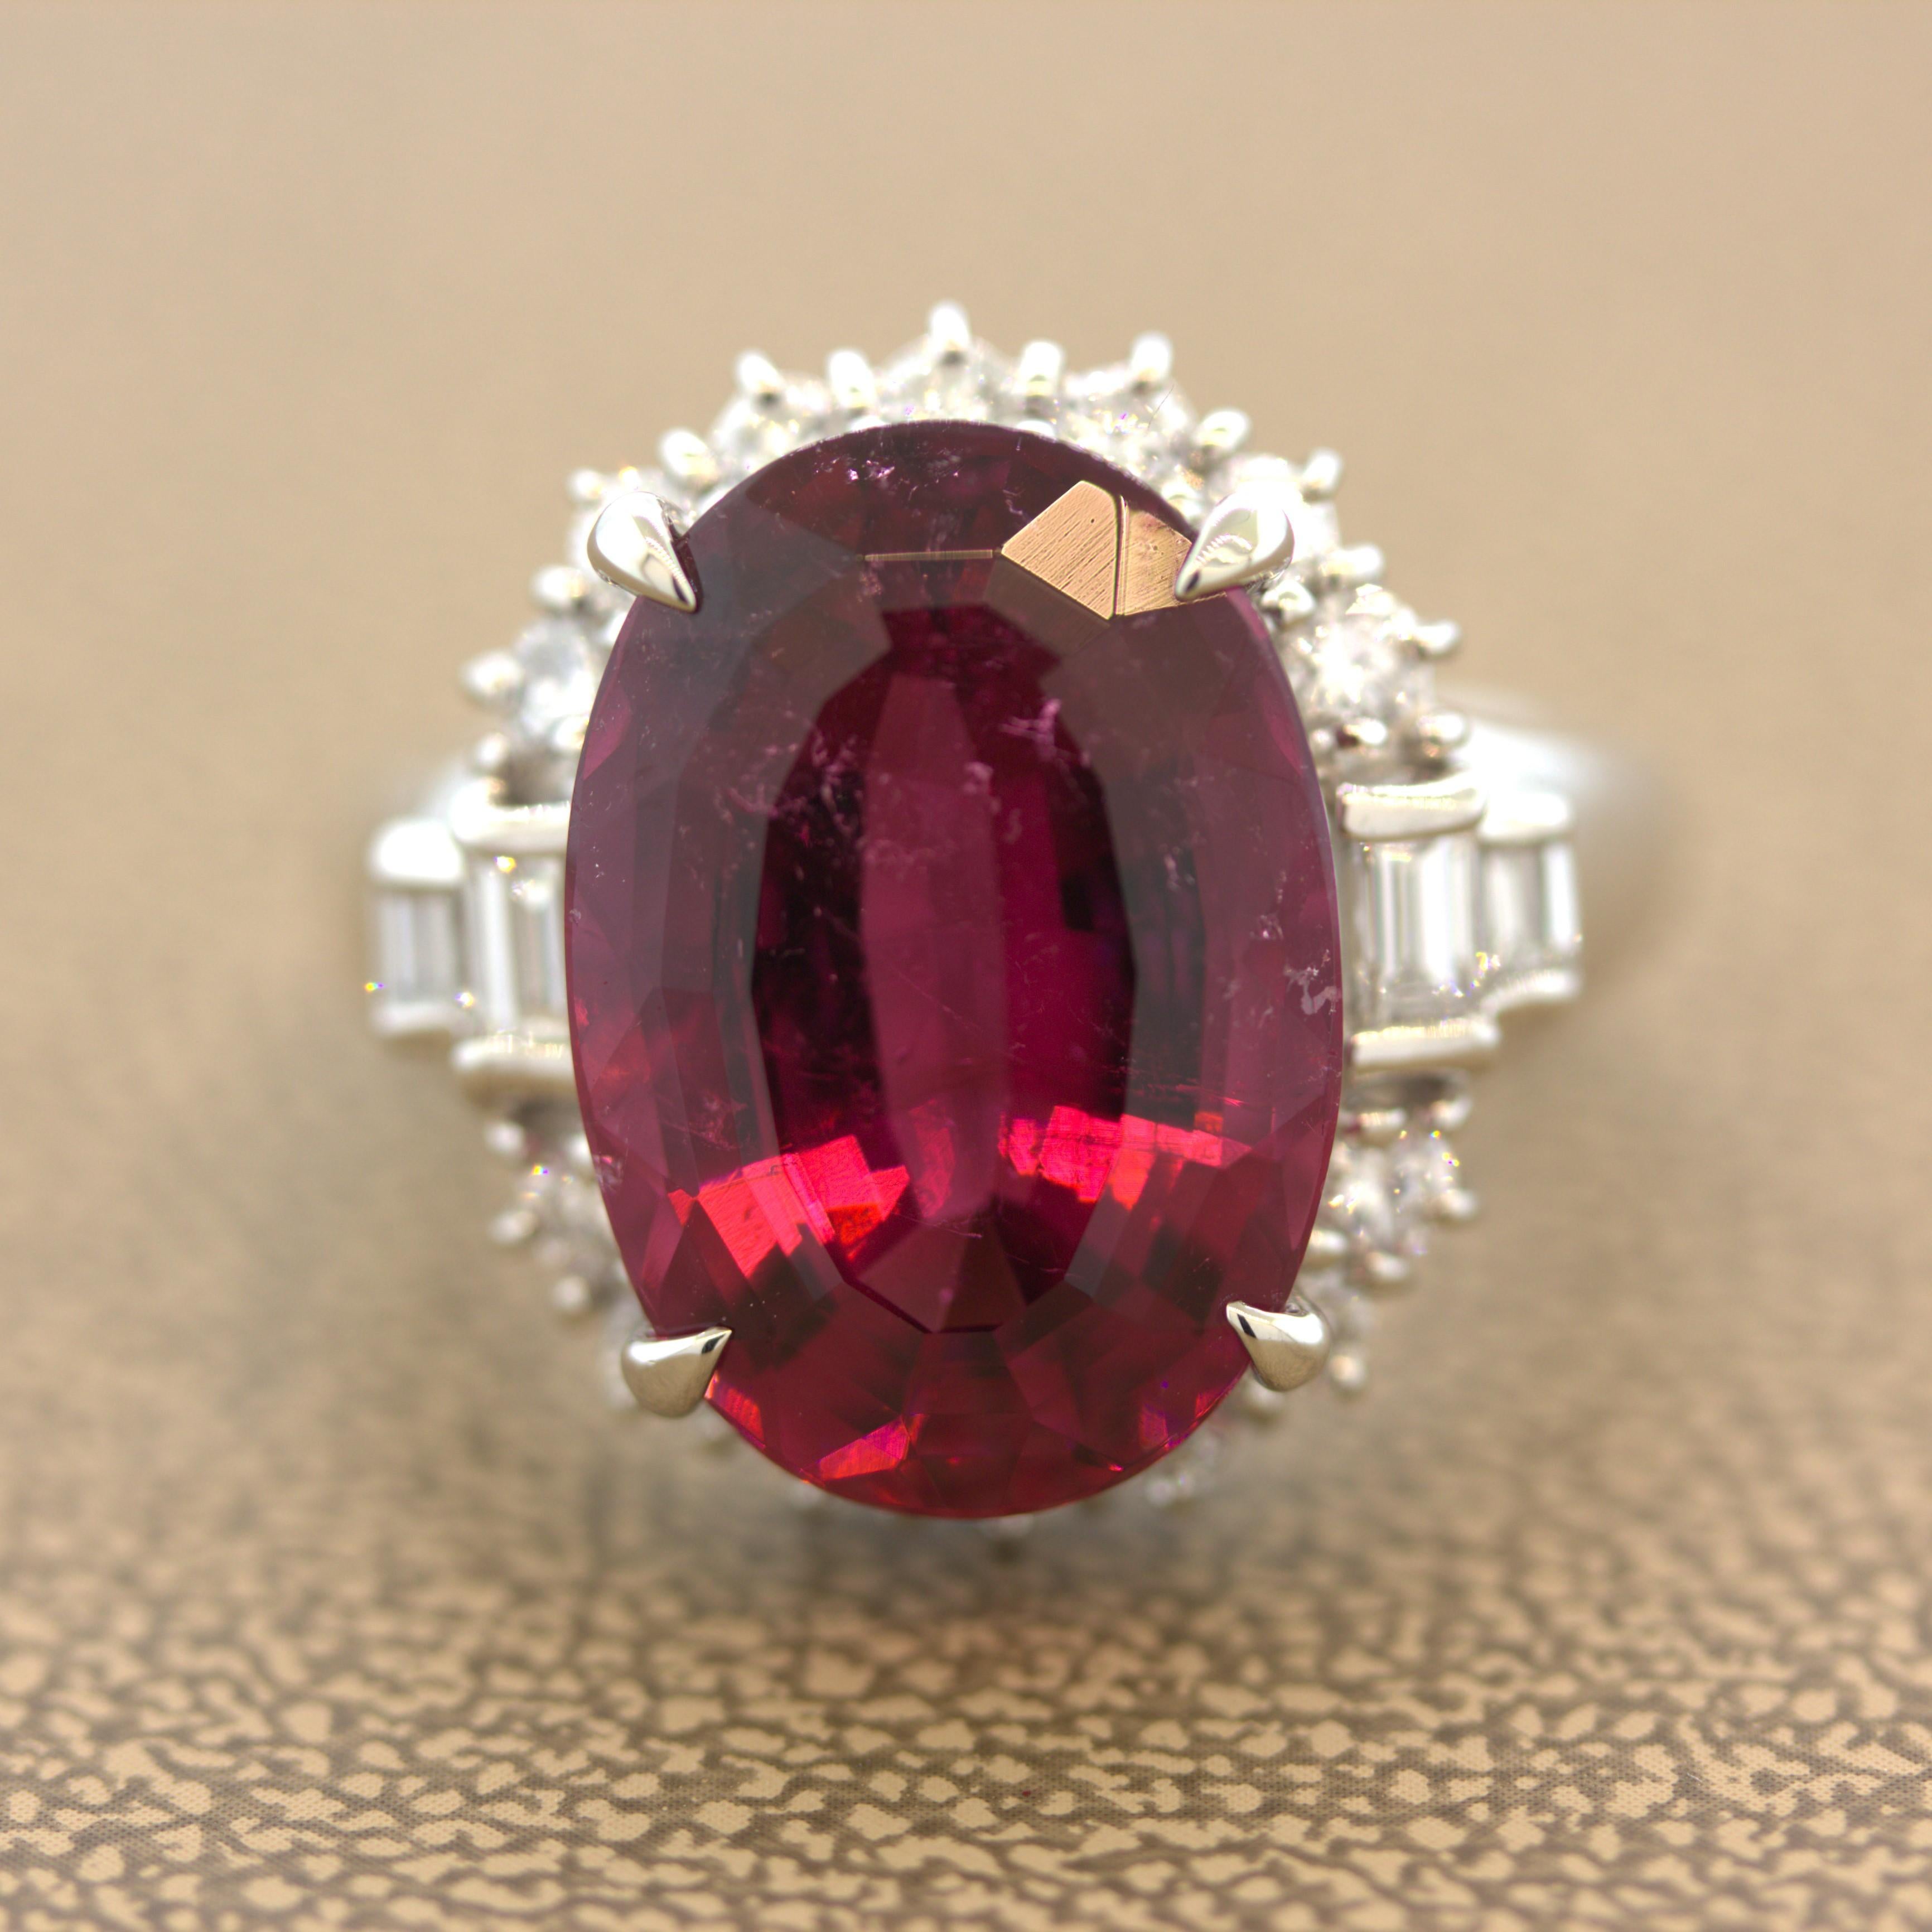 Cette bague chic et élégante est ornée d'une tourmaline rubellite vibrante pesant 9,46 carats. Il a une belle forme ovale et une couleur rouge riche et brillante qui vous fera sourire. Elle est complétée par 1,00 carat de diamants ronds de taille